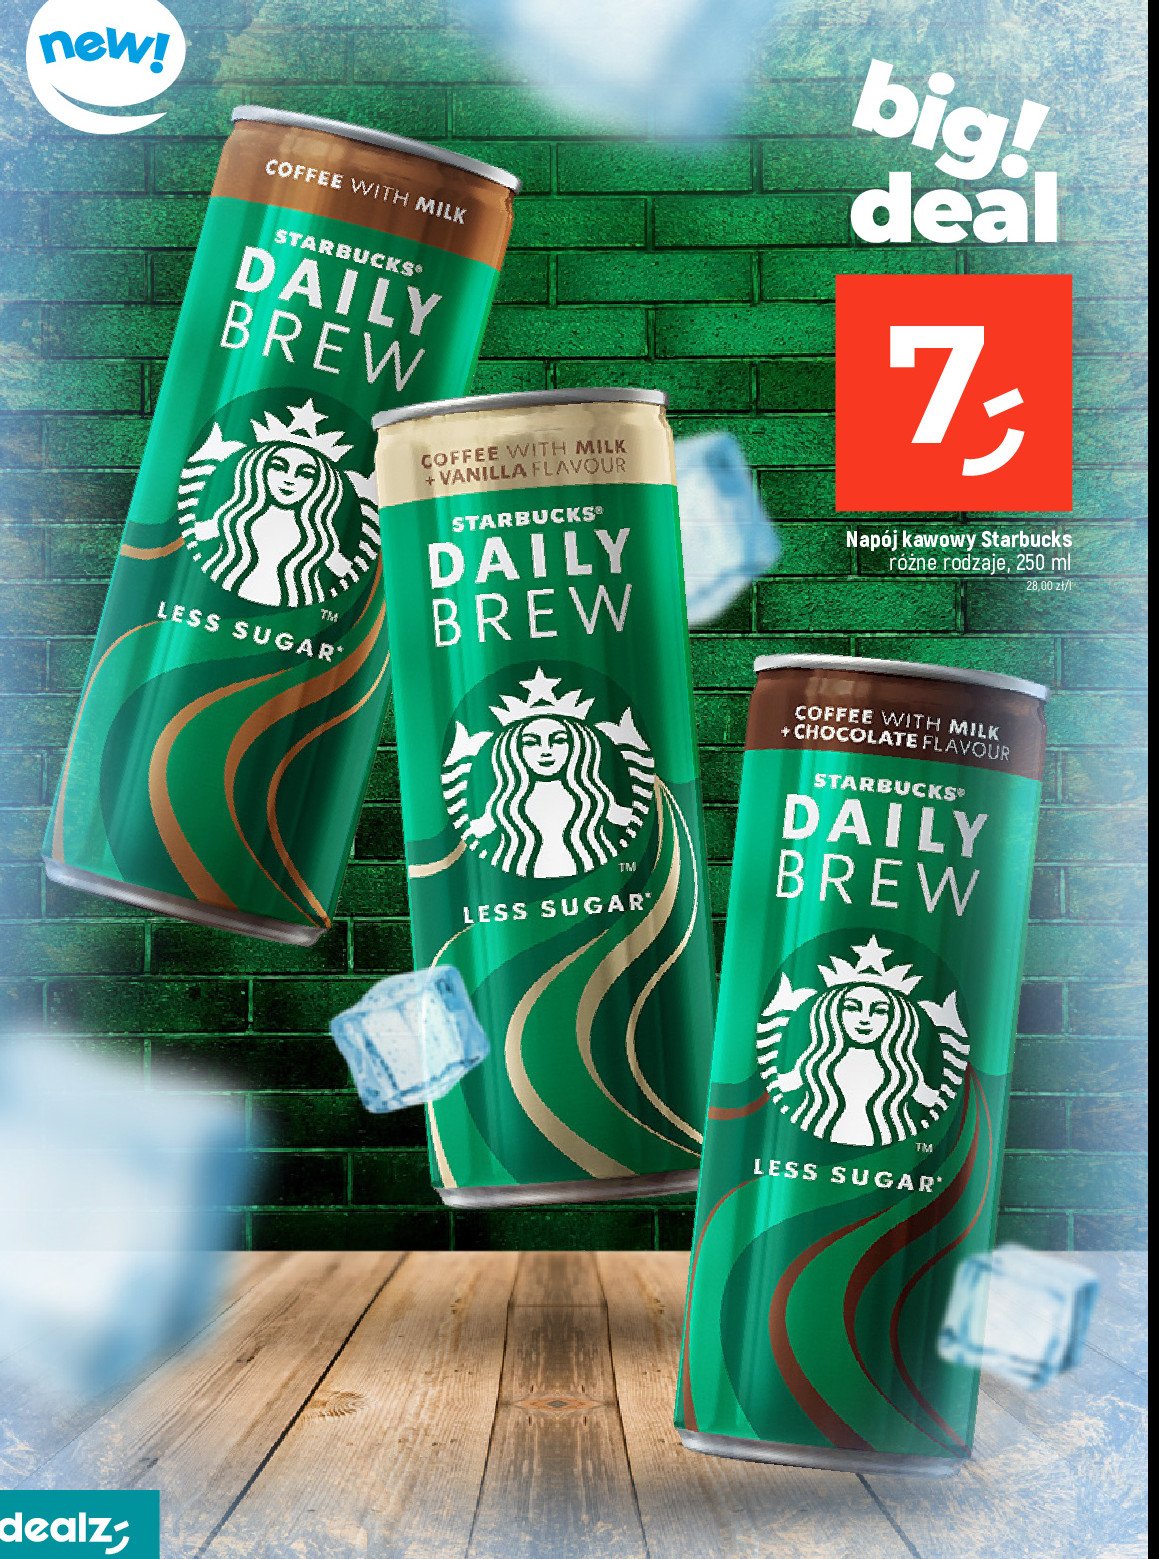 Napój kawowy wanilia Starbucks daily brew promocja w Dealz